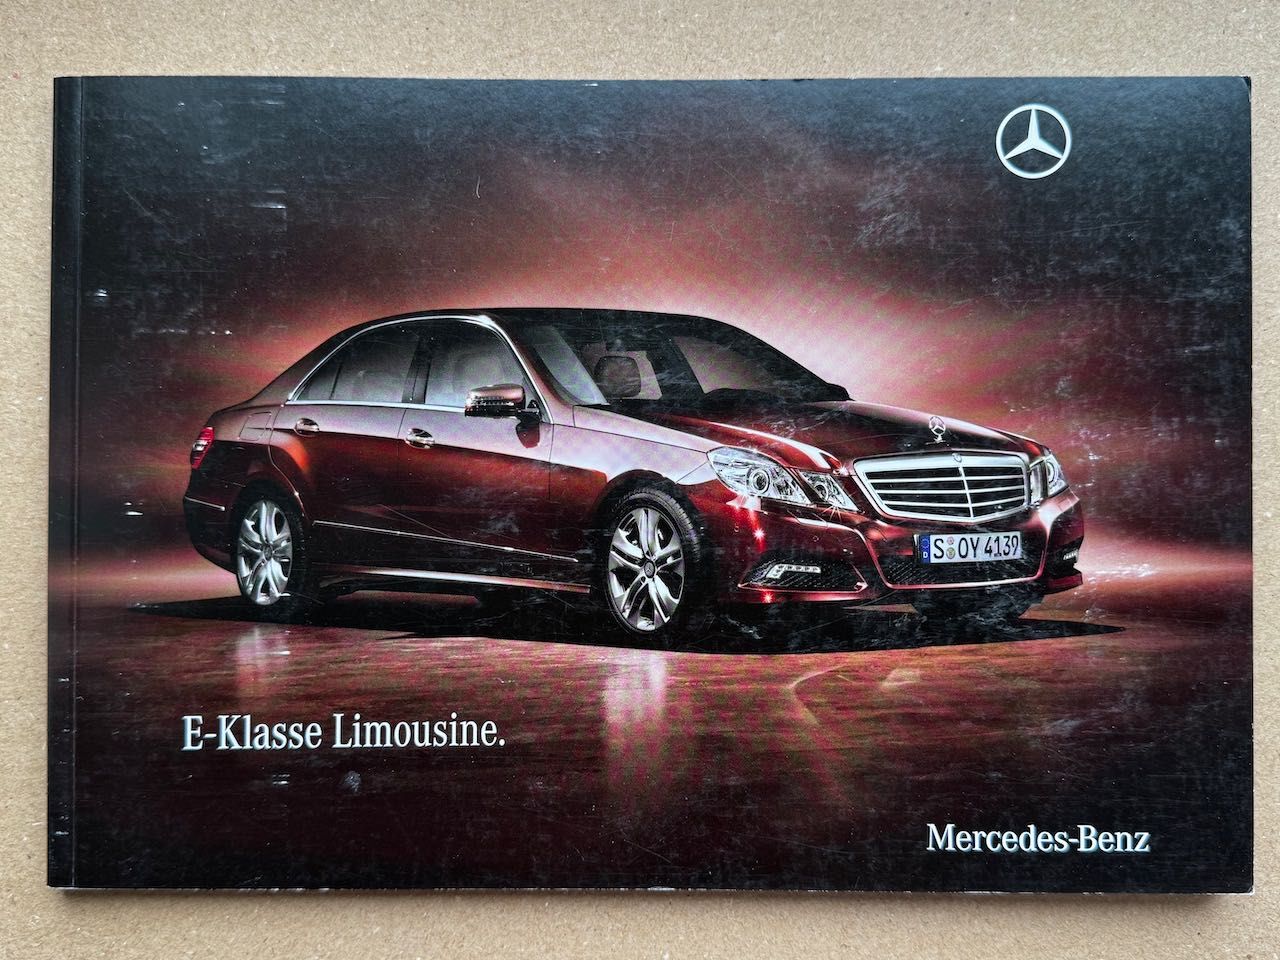 2009 / Mercedes-Benz E Klasse (W212) Limousine / DE / prospekt katalog